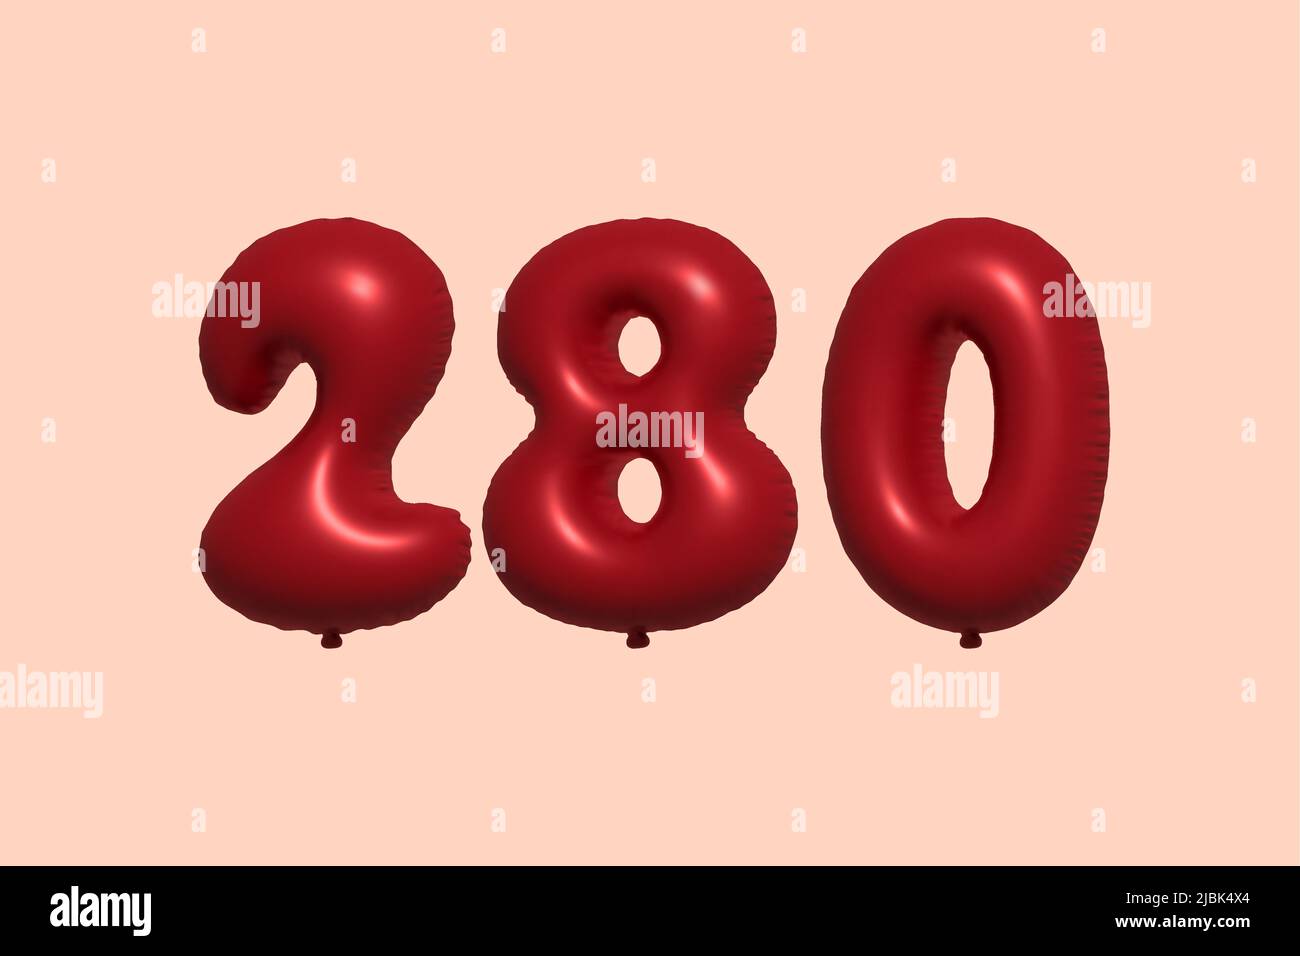 palloncino in numero 280 3d realizzato con rendering realistico di palloncino in aria metallica 3d. 3D palloncini di elio rosso per la vendita decorazione Party compleanno, celebrare anniversario, Vacanza nuziale. Illustrazione vettoriale Illustrazione Vettoriale